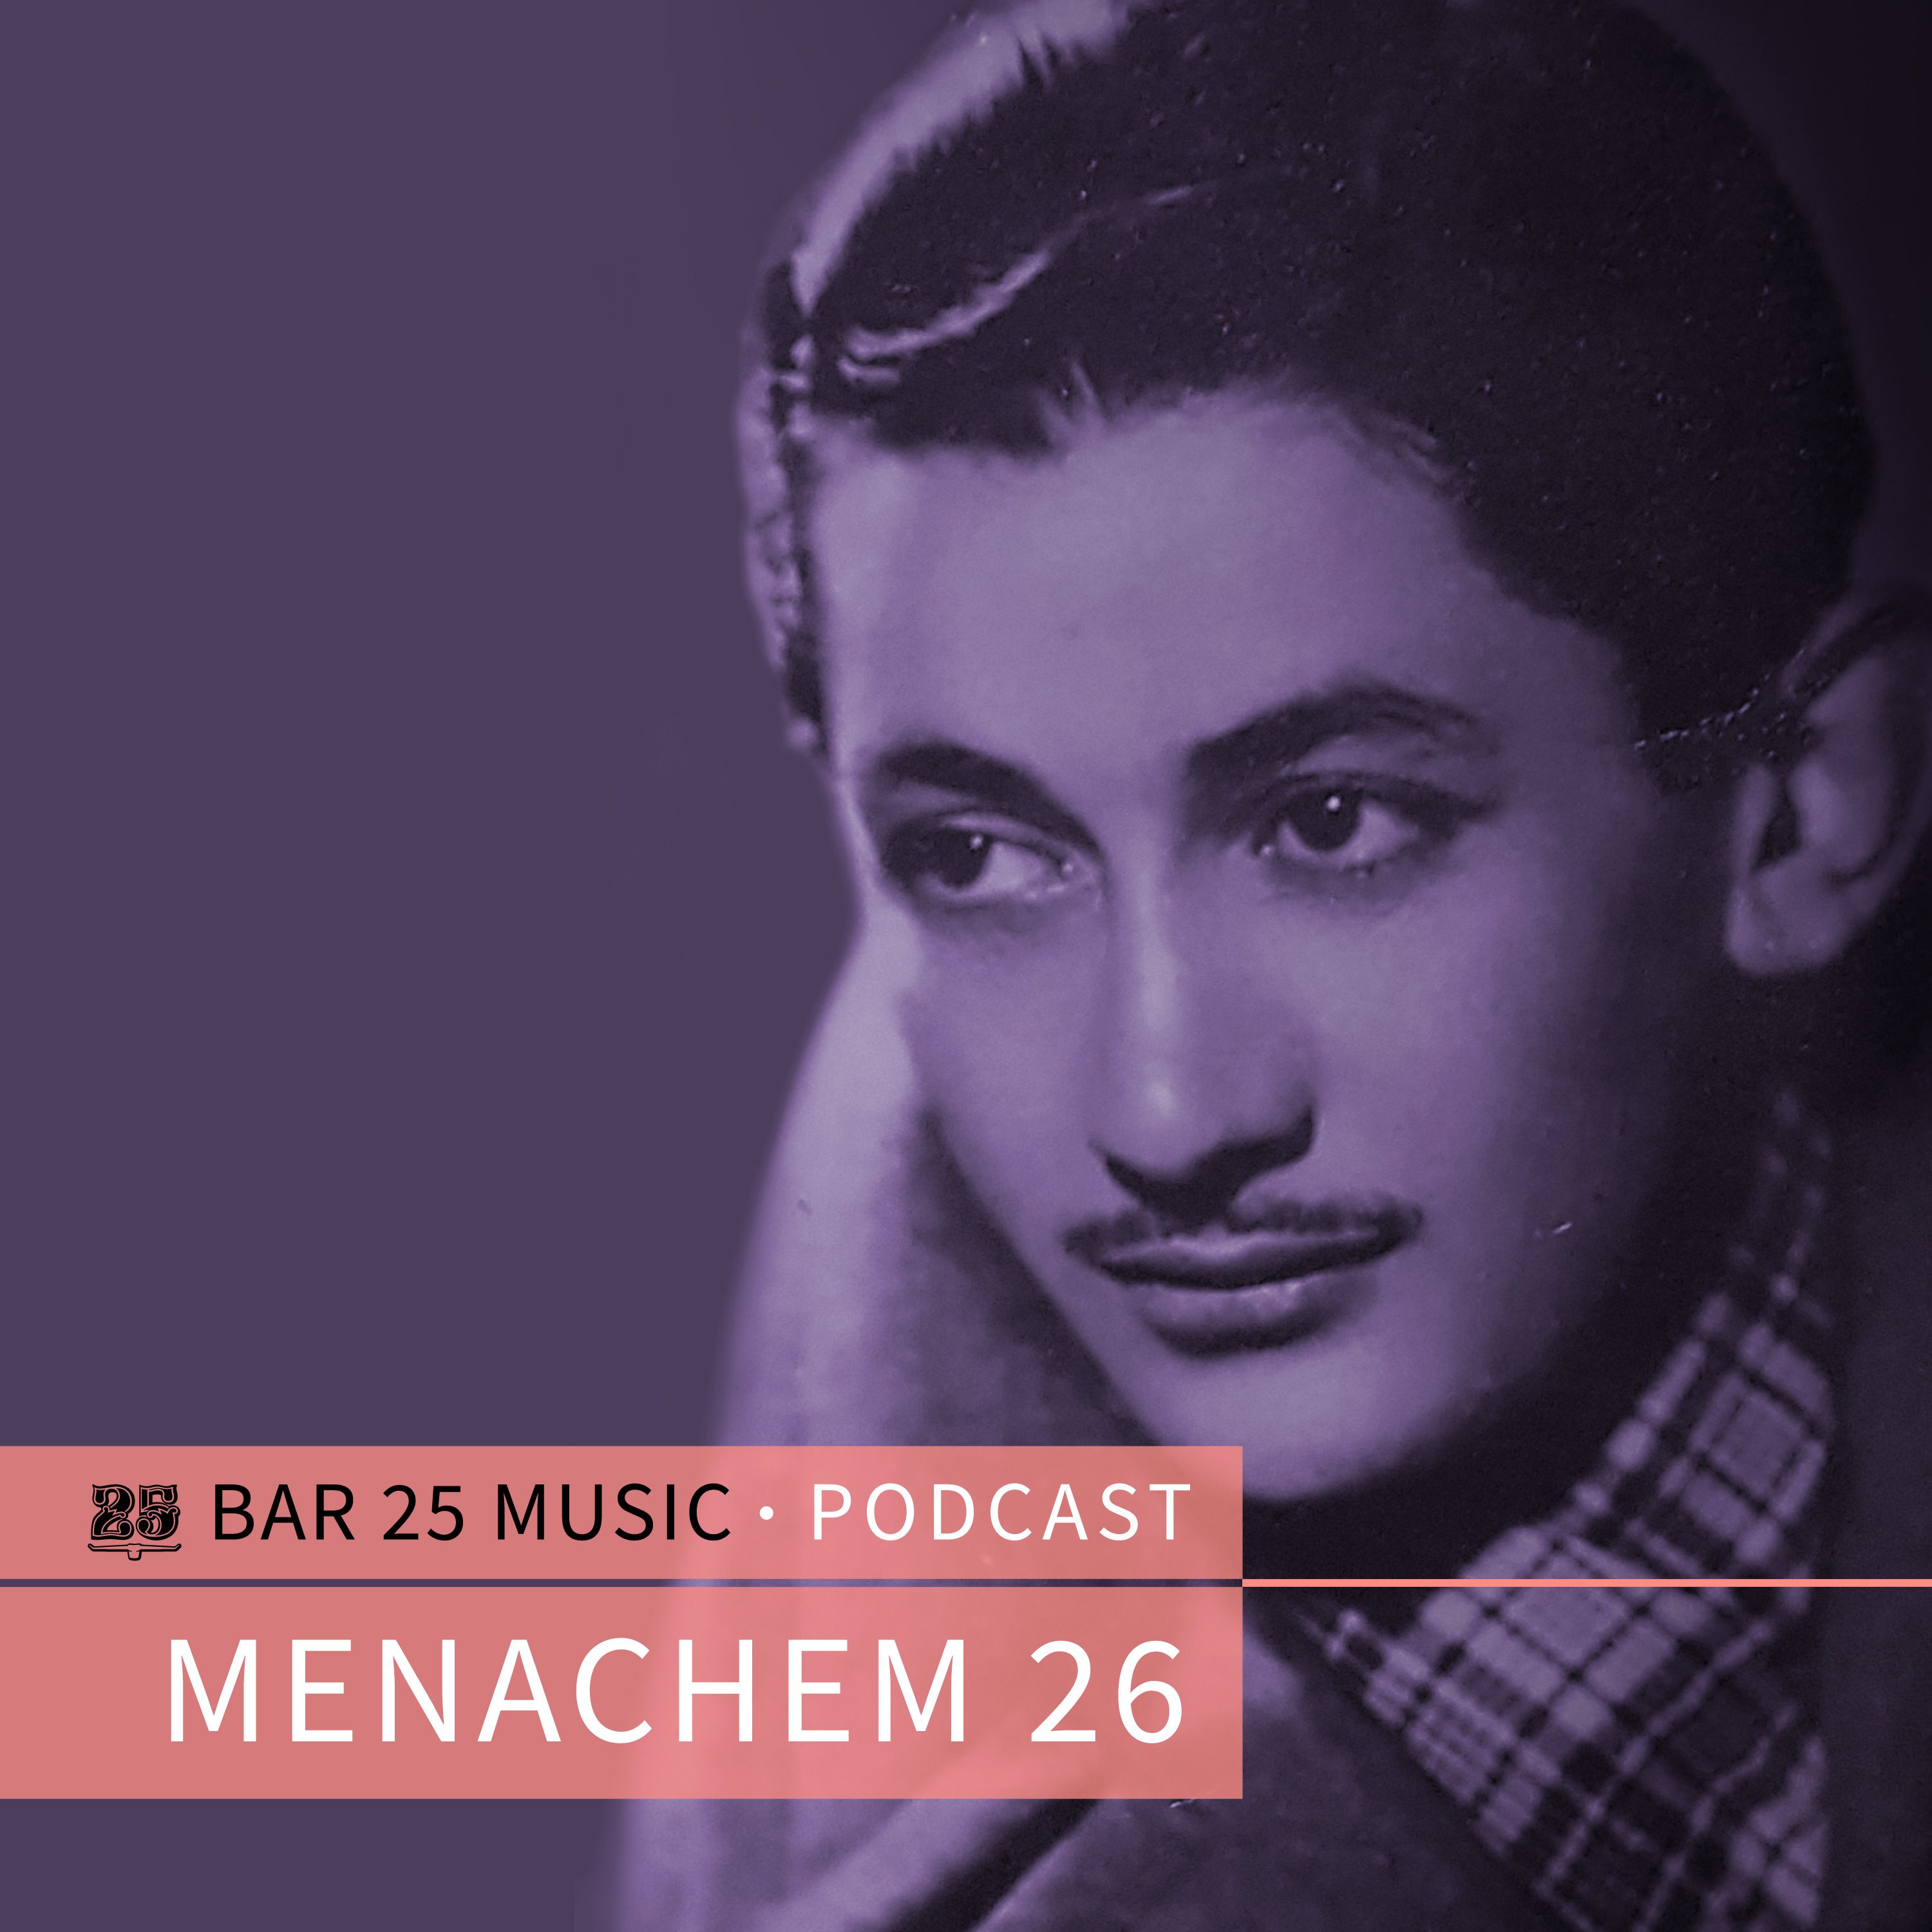 ਡਾਉਨਲੋਡ ਕਰੋ Bar 25 Music Podcast #130 - Menachem 26